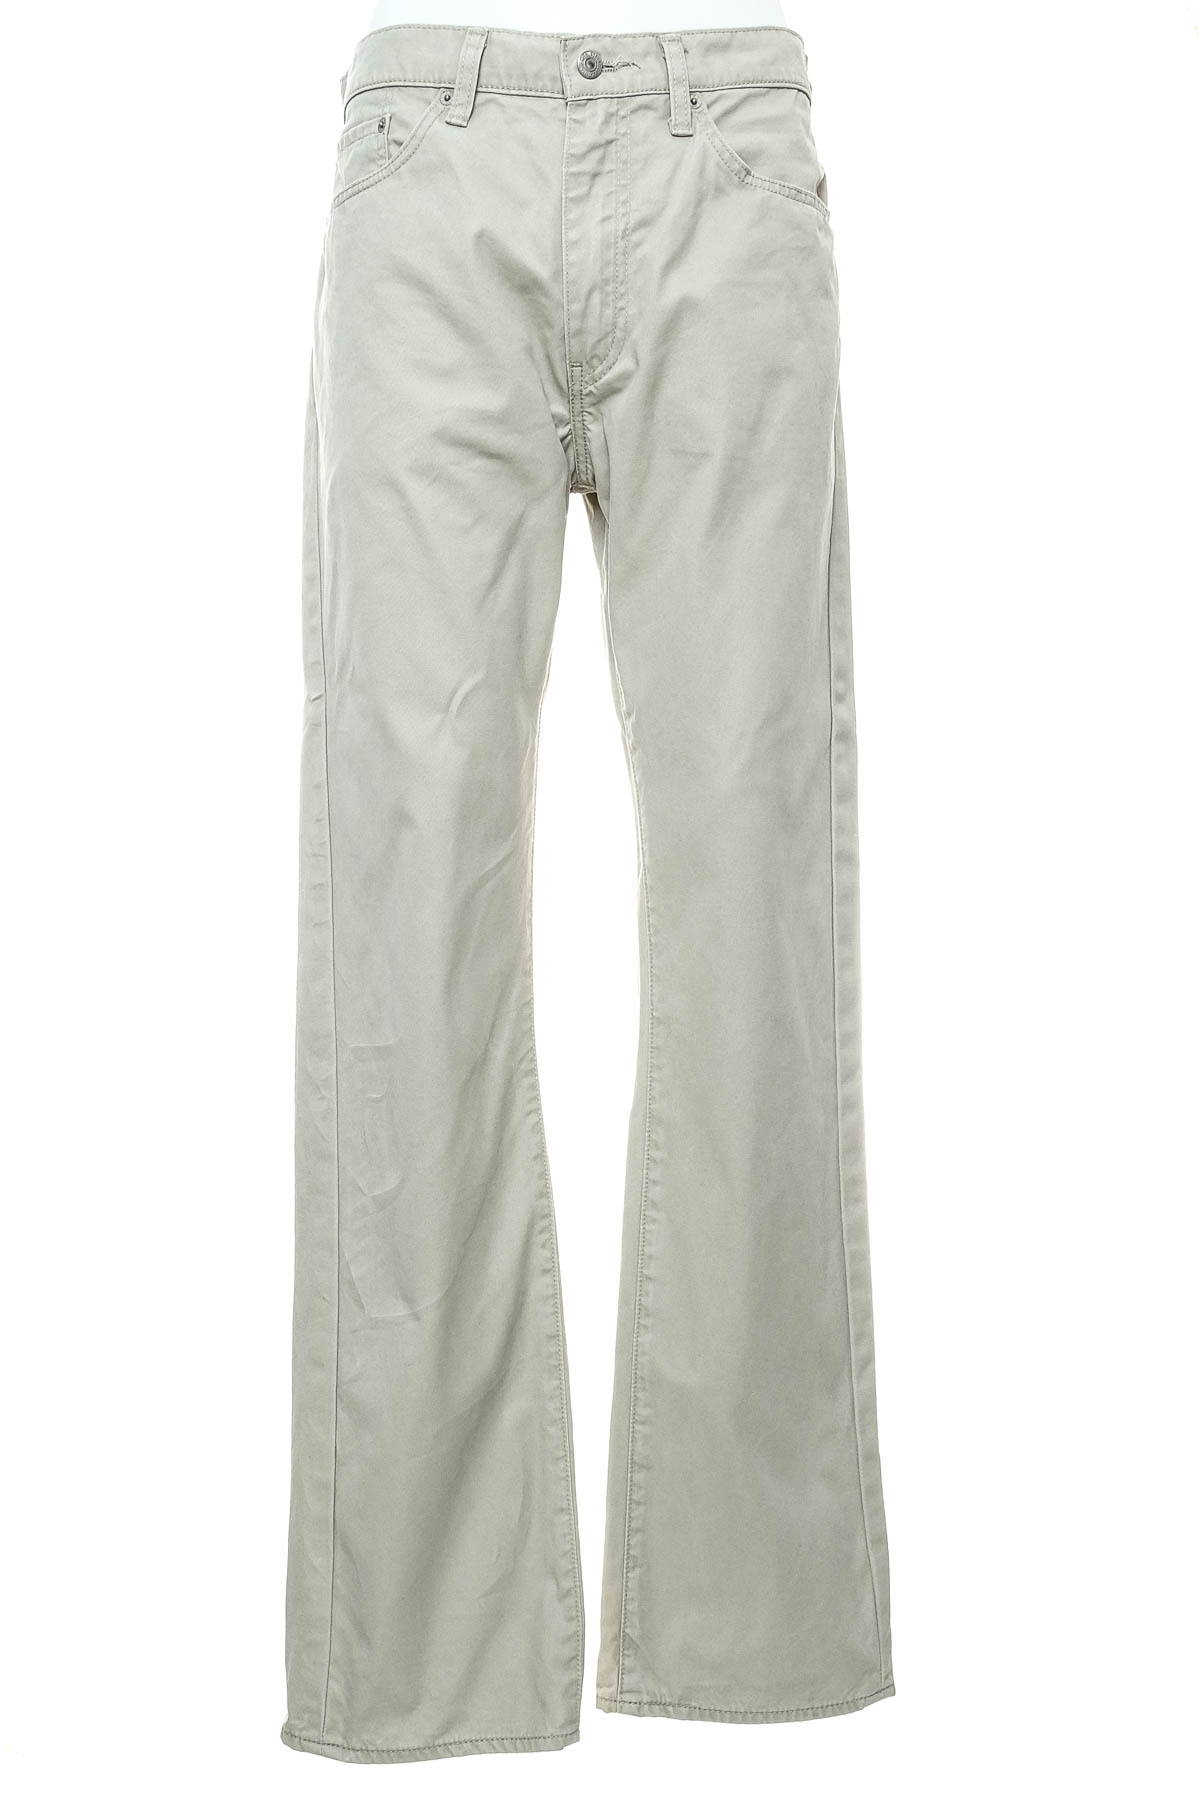 Pantalon pentru bărbați - Levi Strauss & Co. - 0